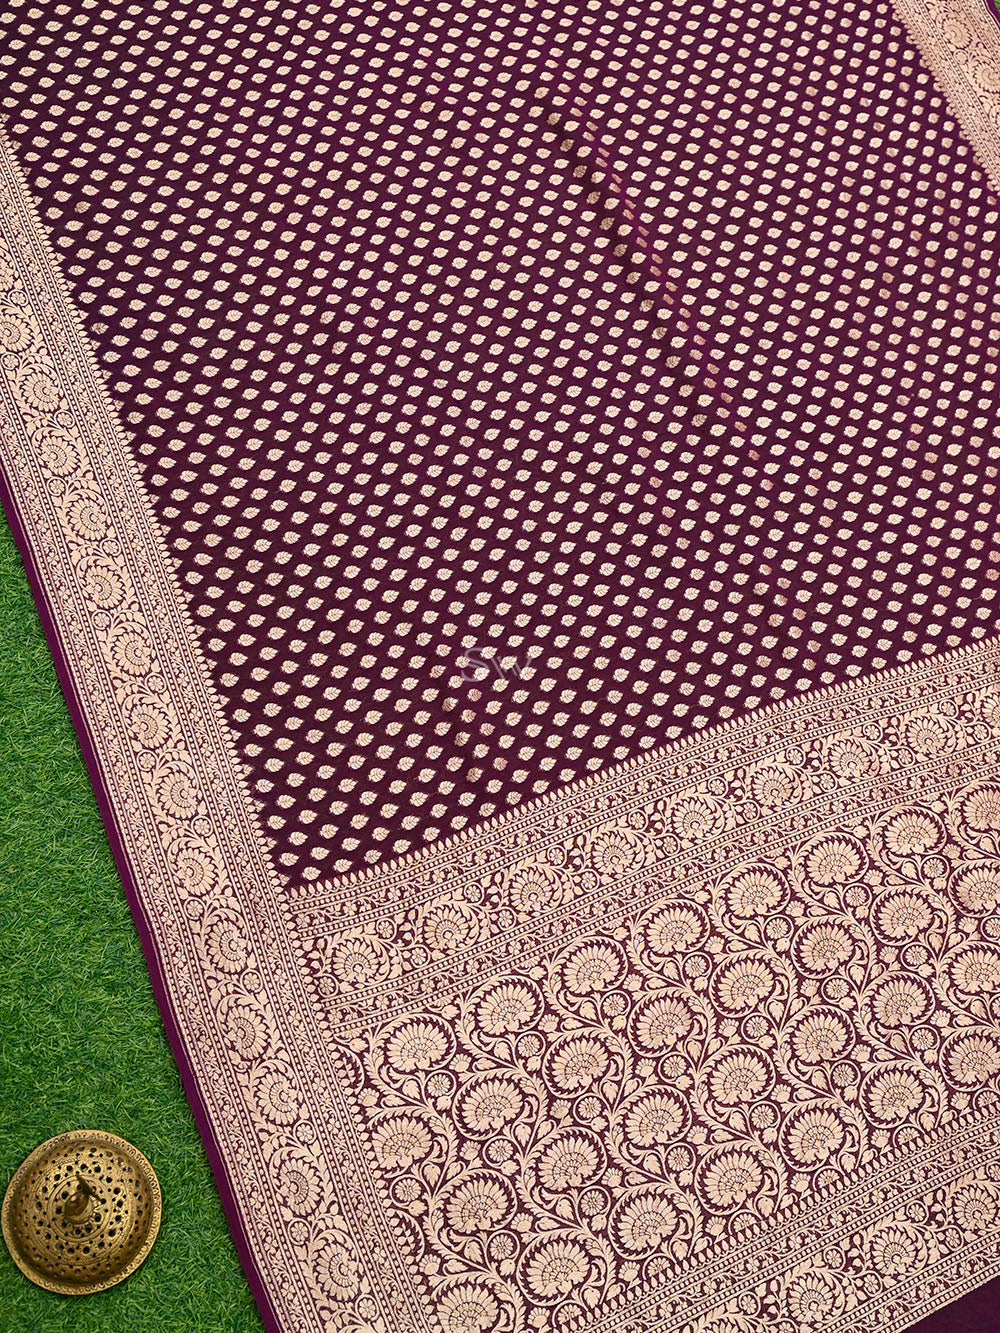 Purple Booti Khaddi Georgette Handloom Banarasi Saree - Sacred Weaves